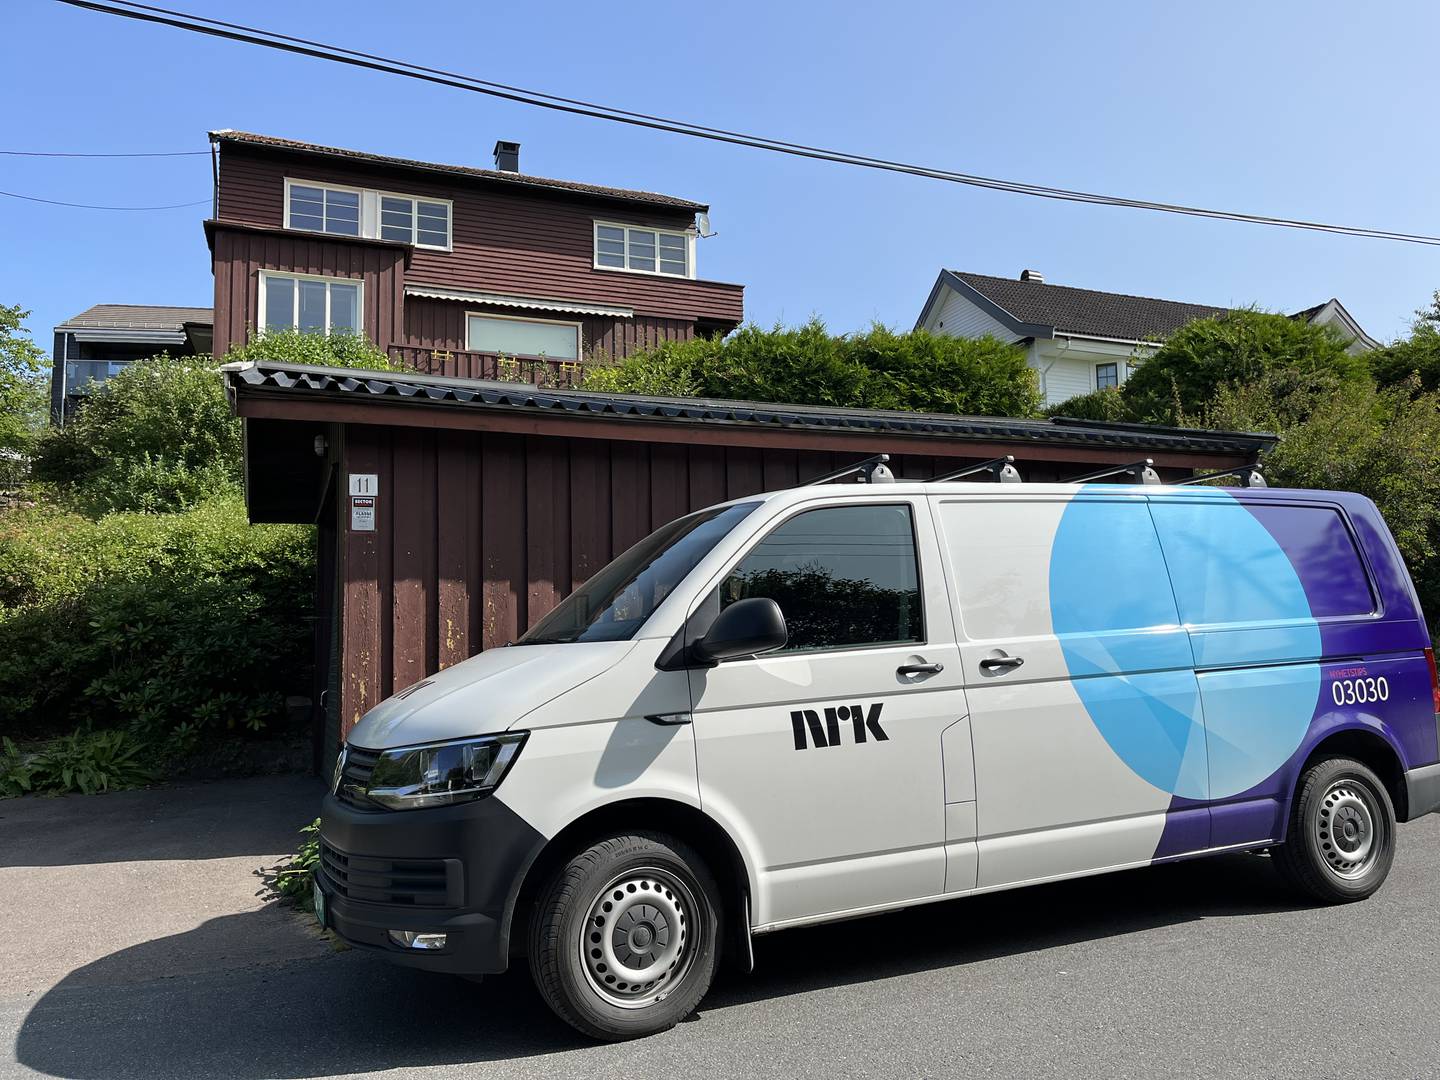 NRK starter tømmingen av villaen i Fådveien på Røa denne høsten. At huset er blitt berømt, er en faktor som kan føre til høyere salgspris - selv om den store eneboligen er nedslitt.